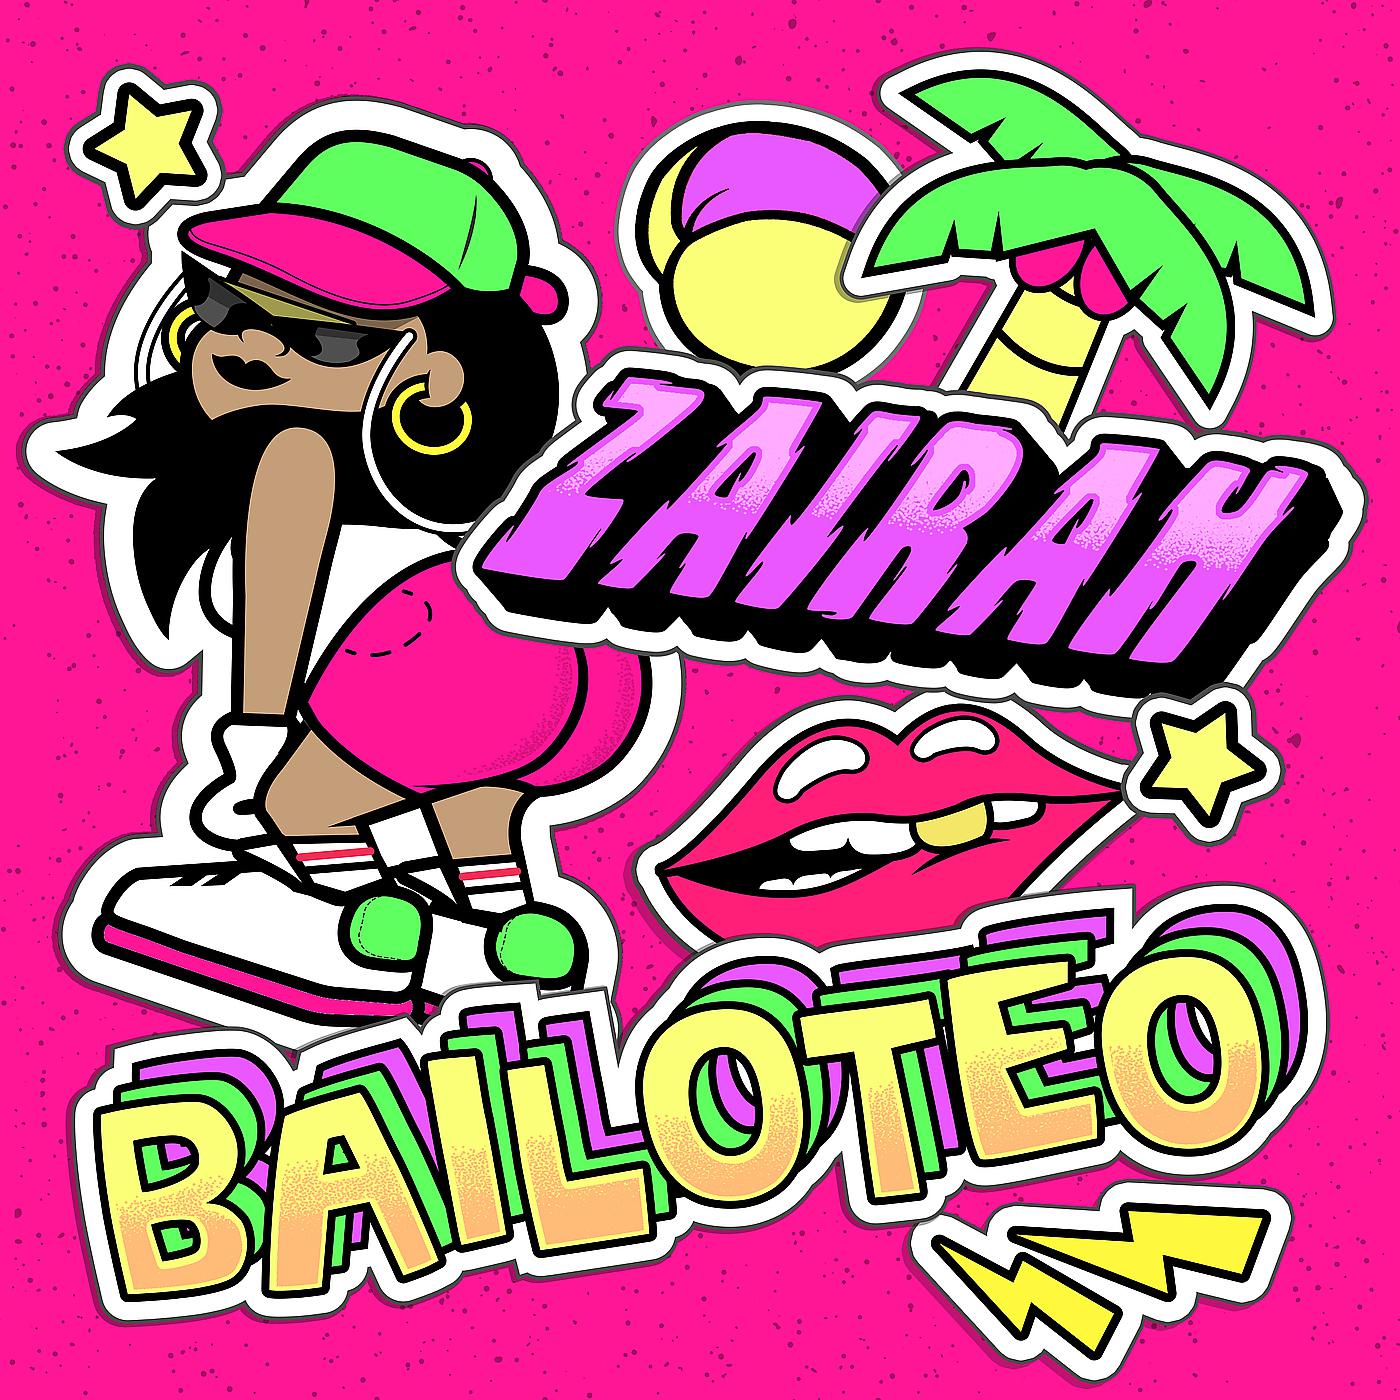 Постер альбома Bailoteo